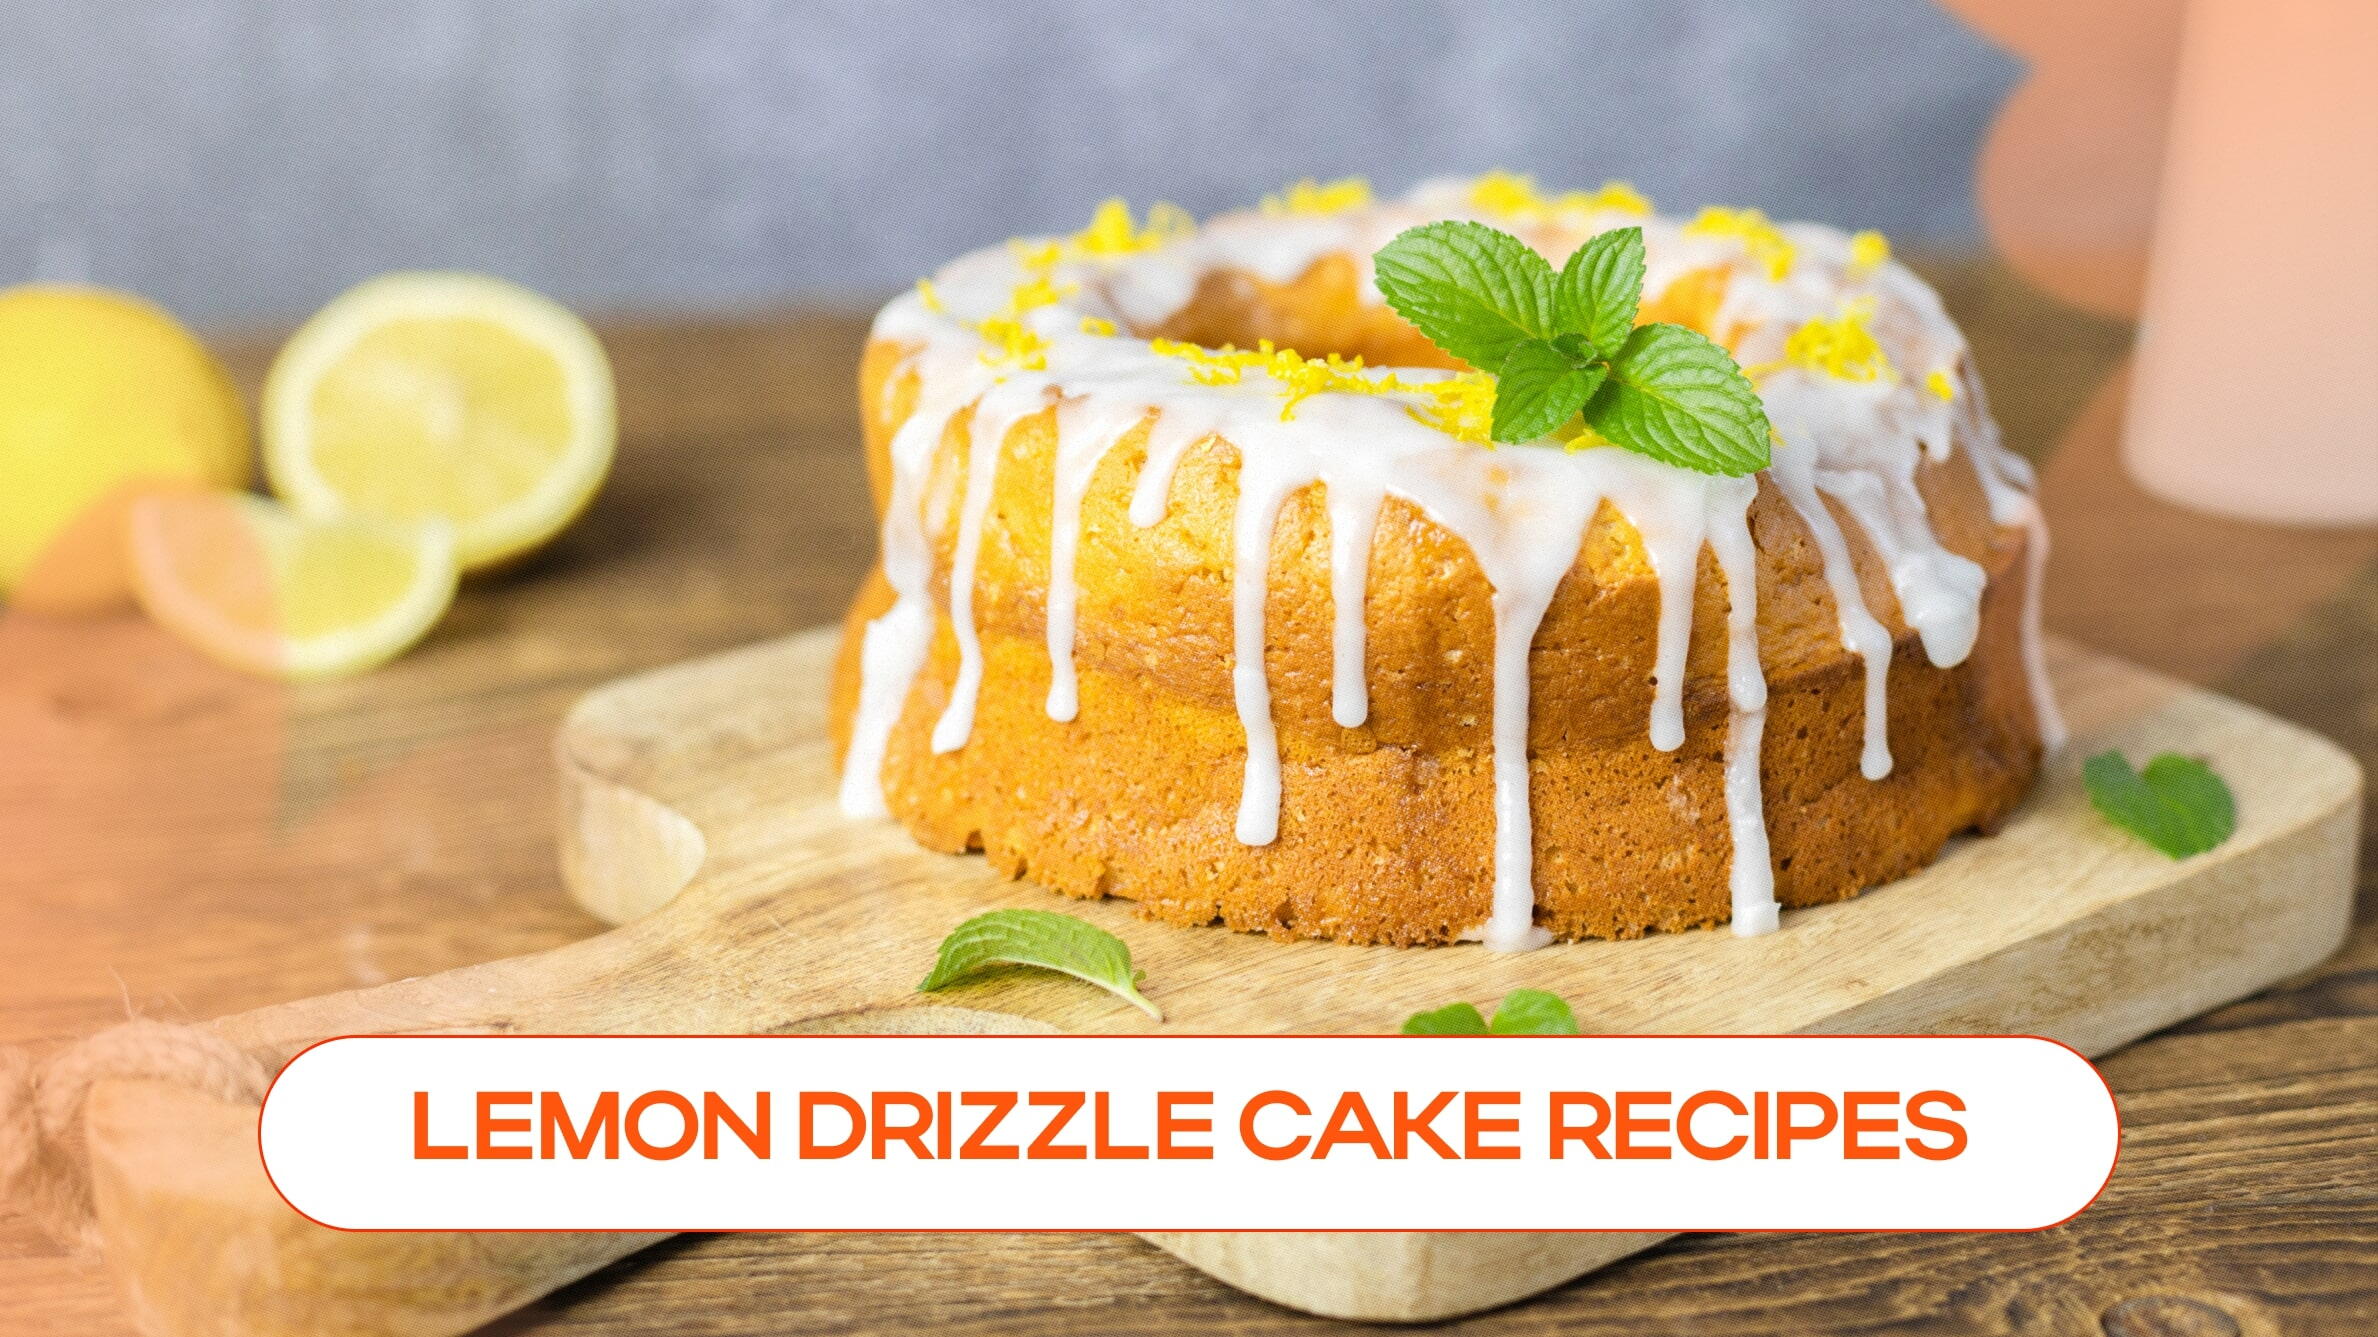 Lemon drizzle cake recipes